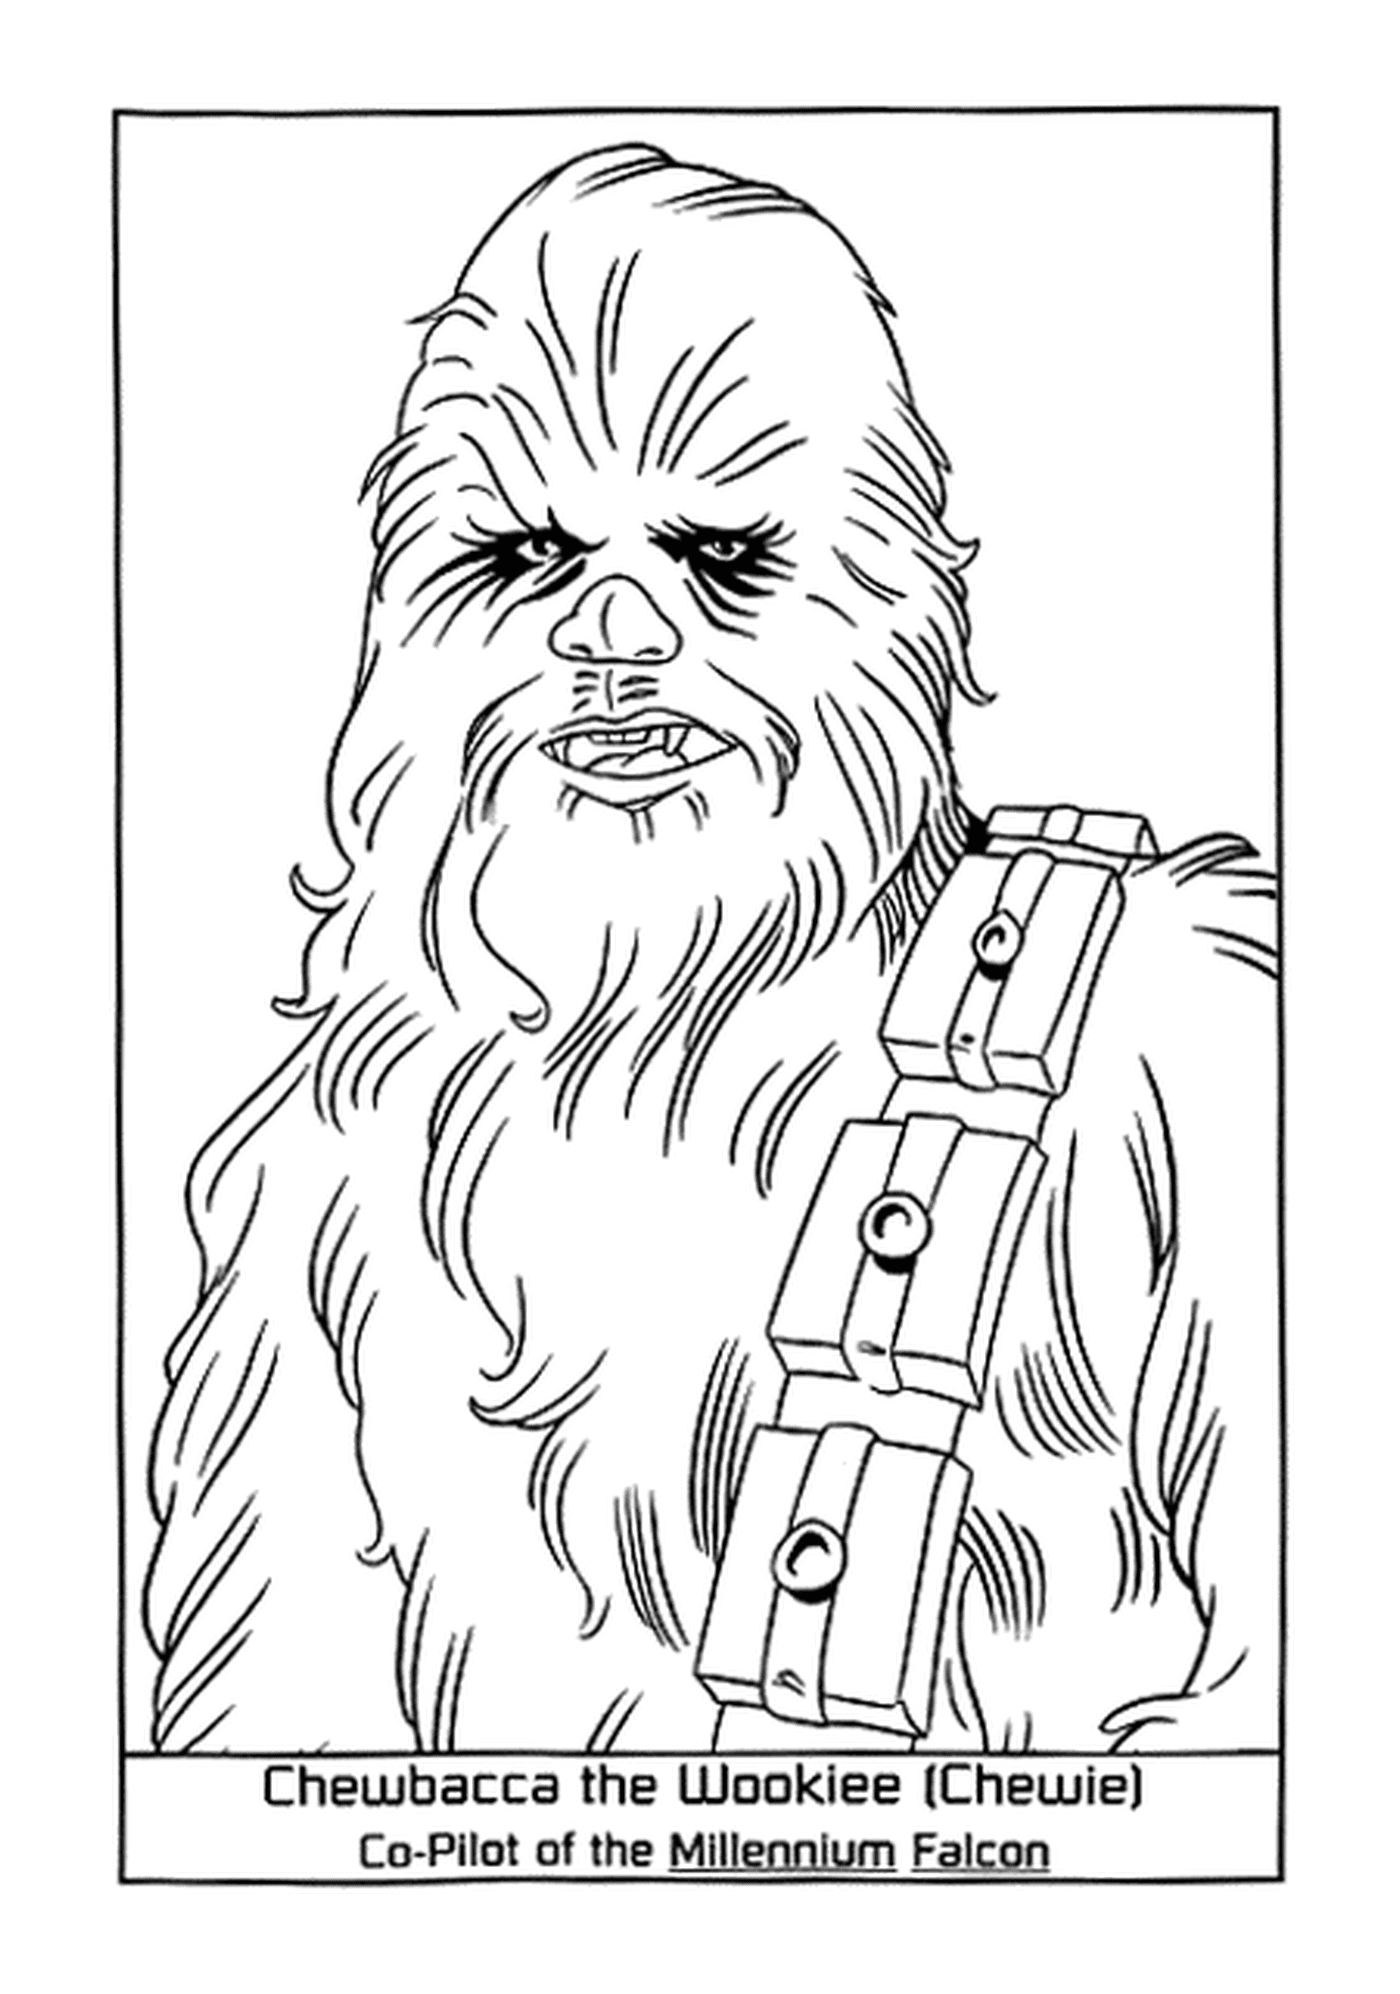  The faithful Chewbacca Wookiee 